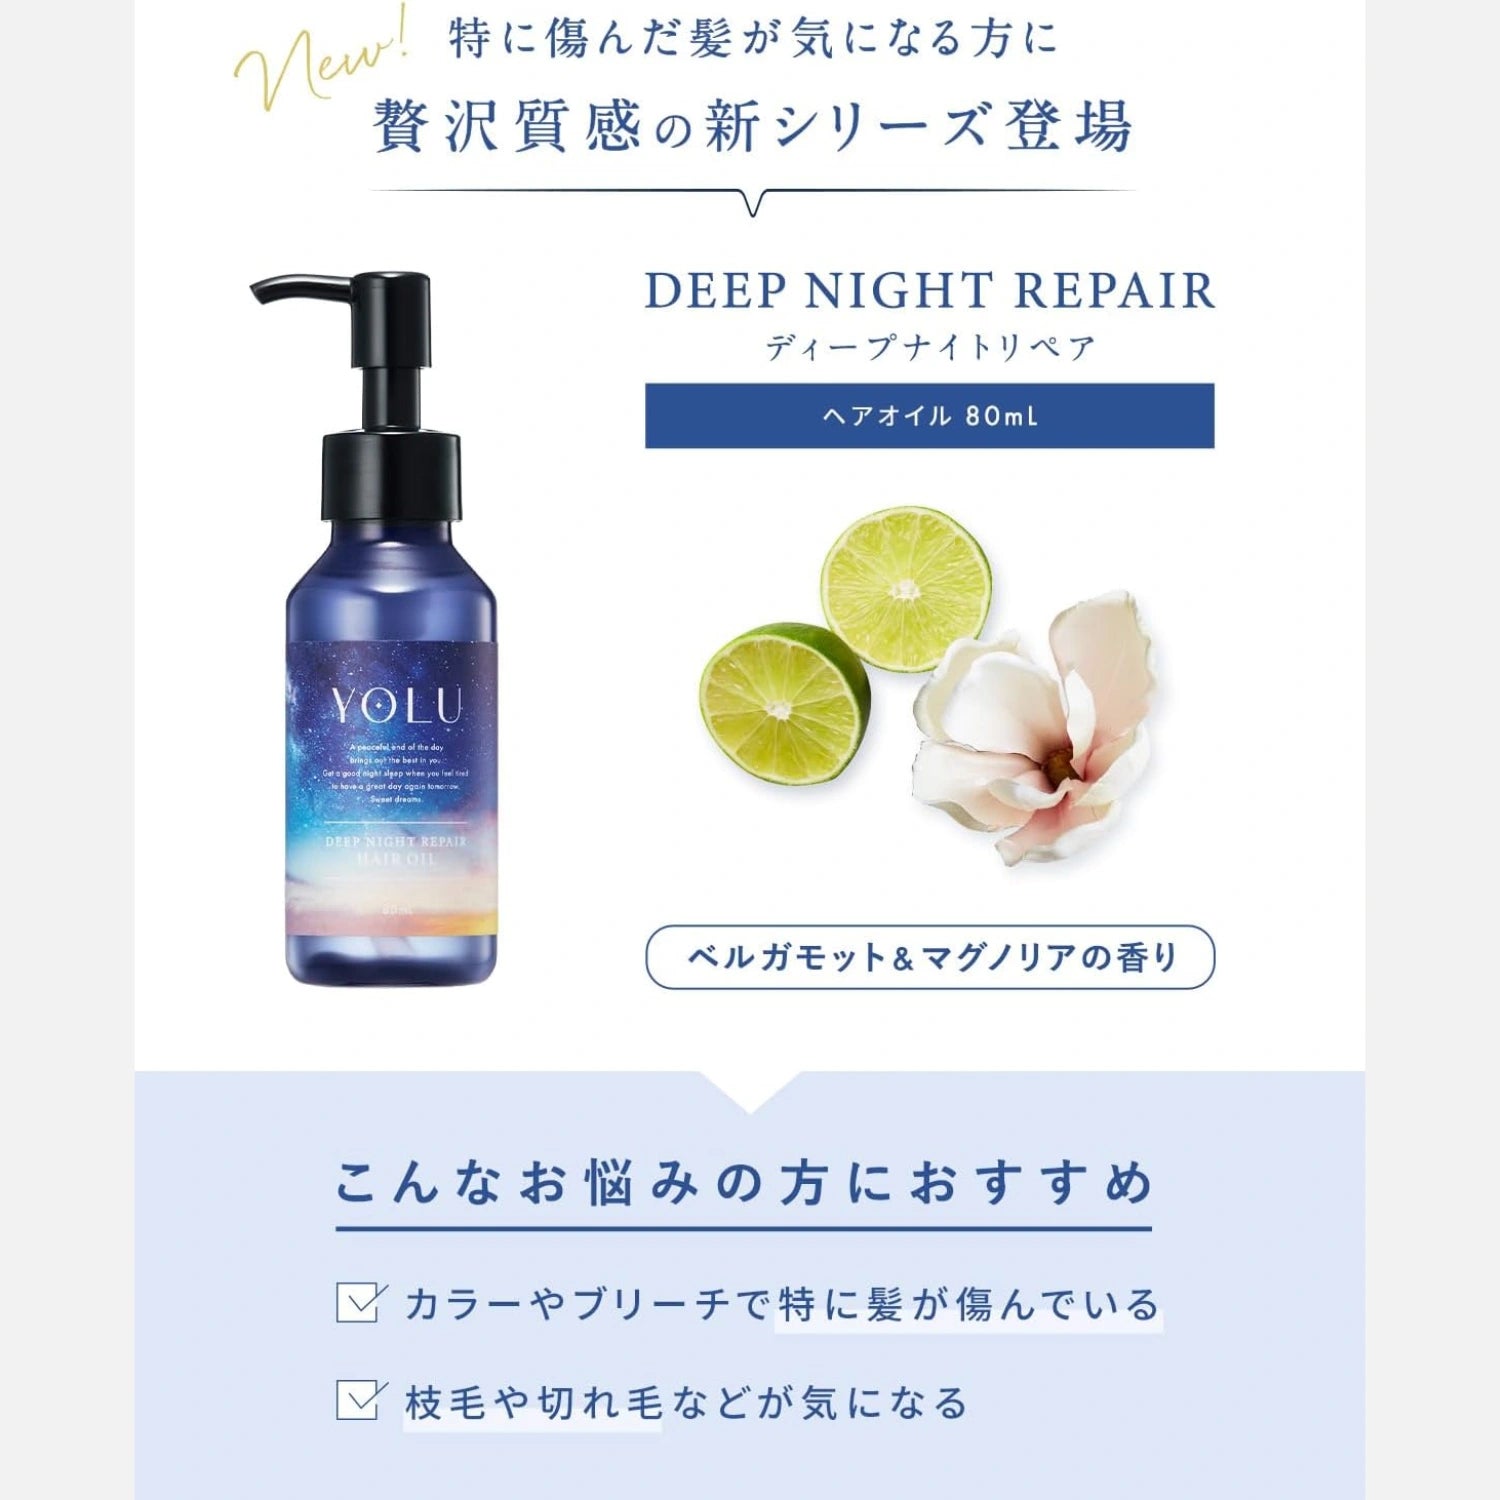 YOLU Deep Night Repair Hair Oil 80ml - Buy Me Japan